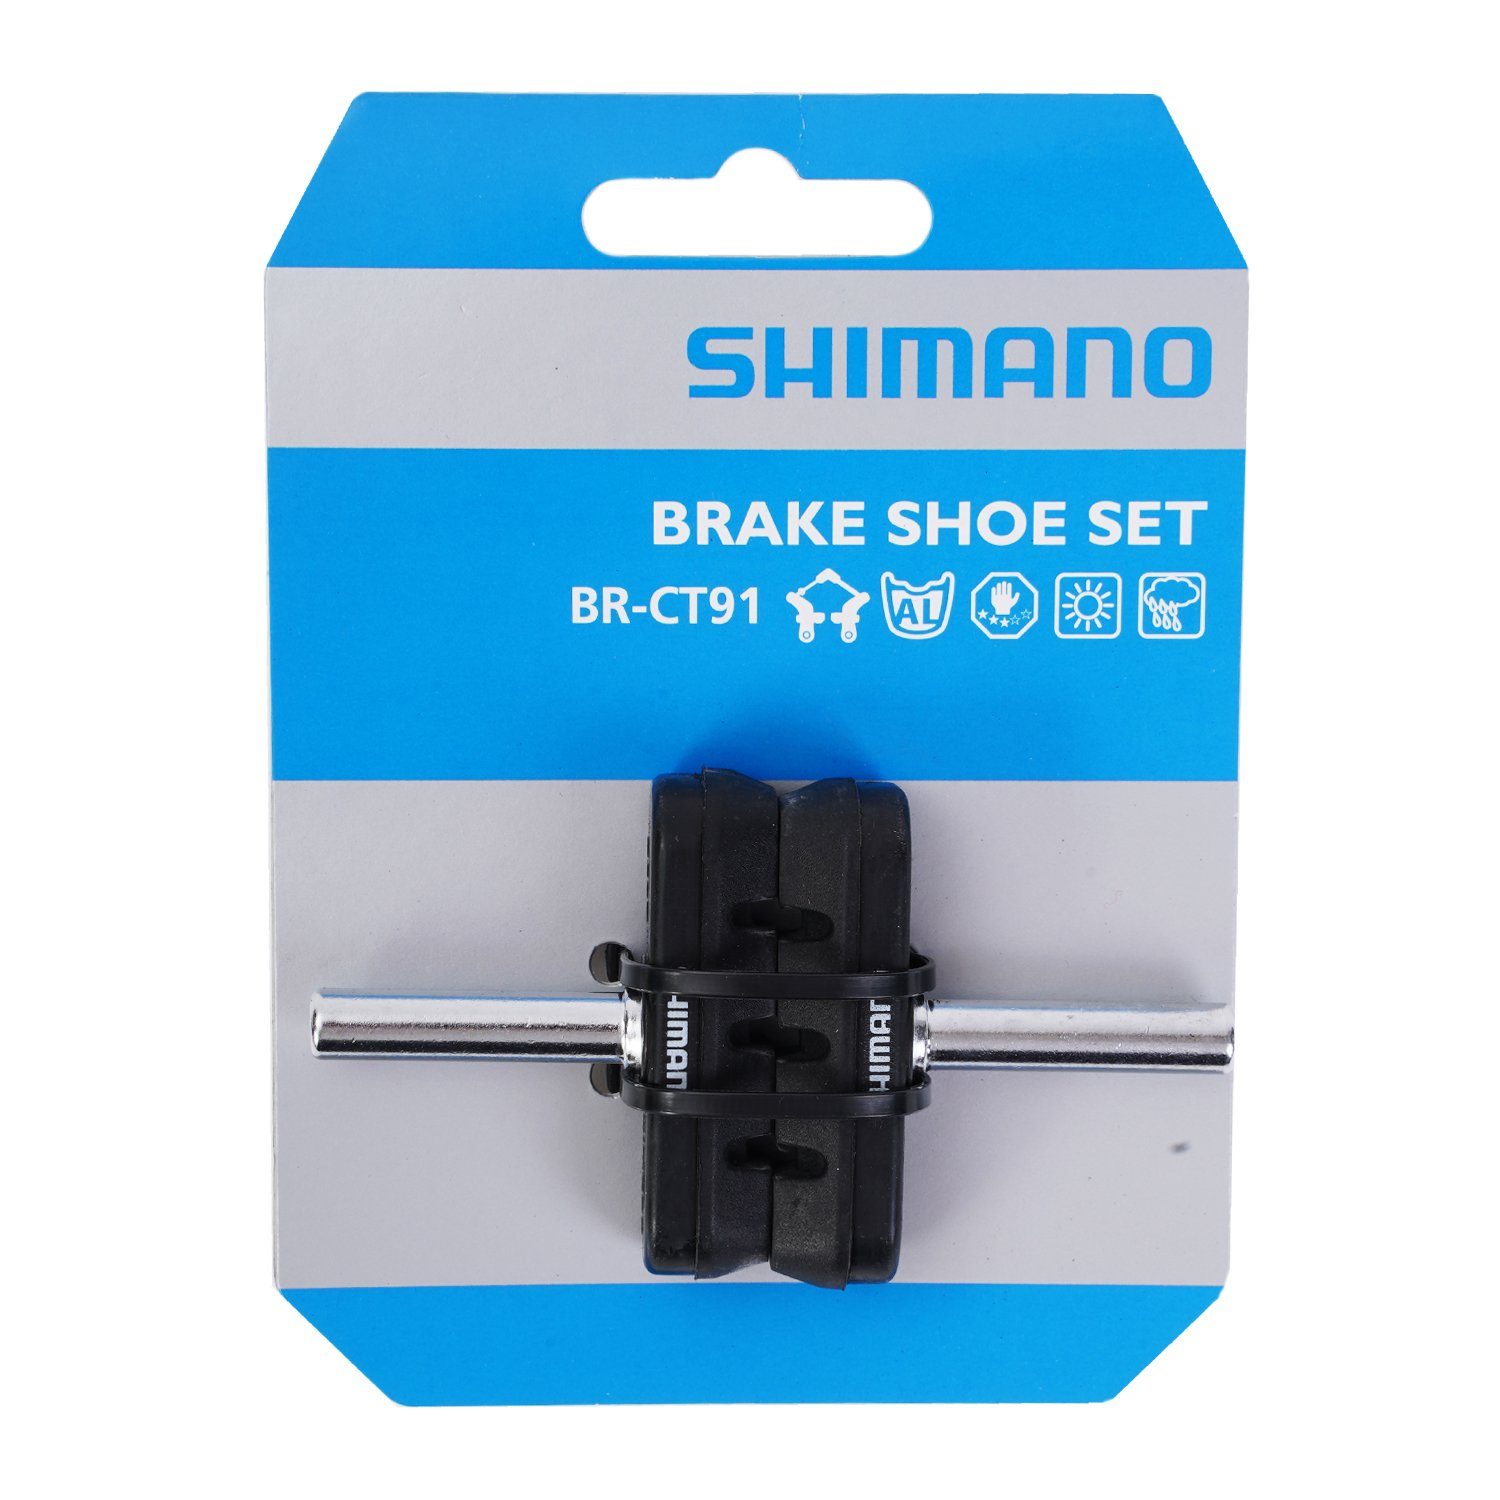 2x Shimano Cantilever Bremsbeläge Bremse Mittelzug BR-CT91 Bremsklotz-Satz Cantilever-Bremse Bremsbelag,